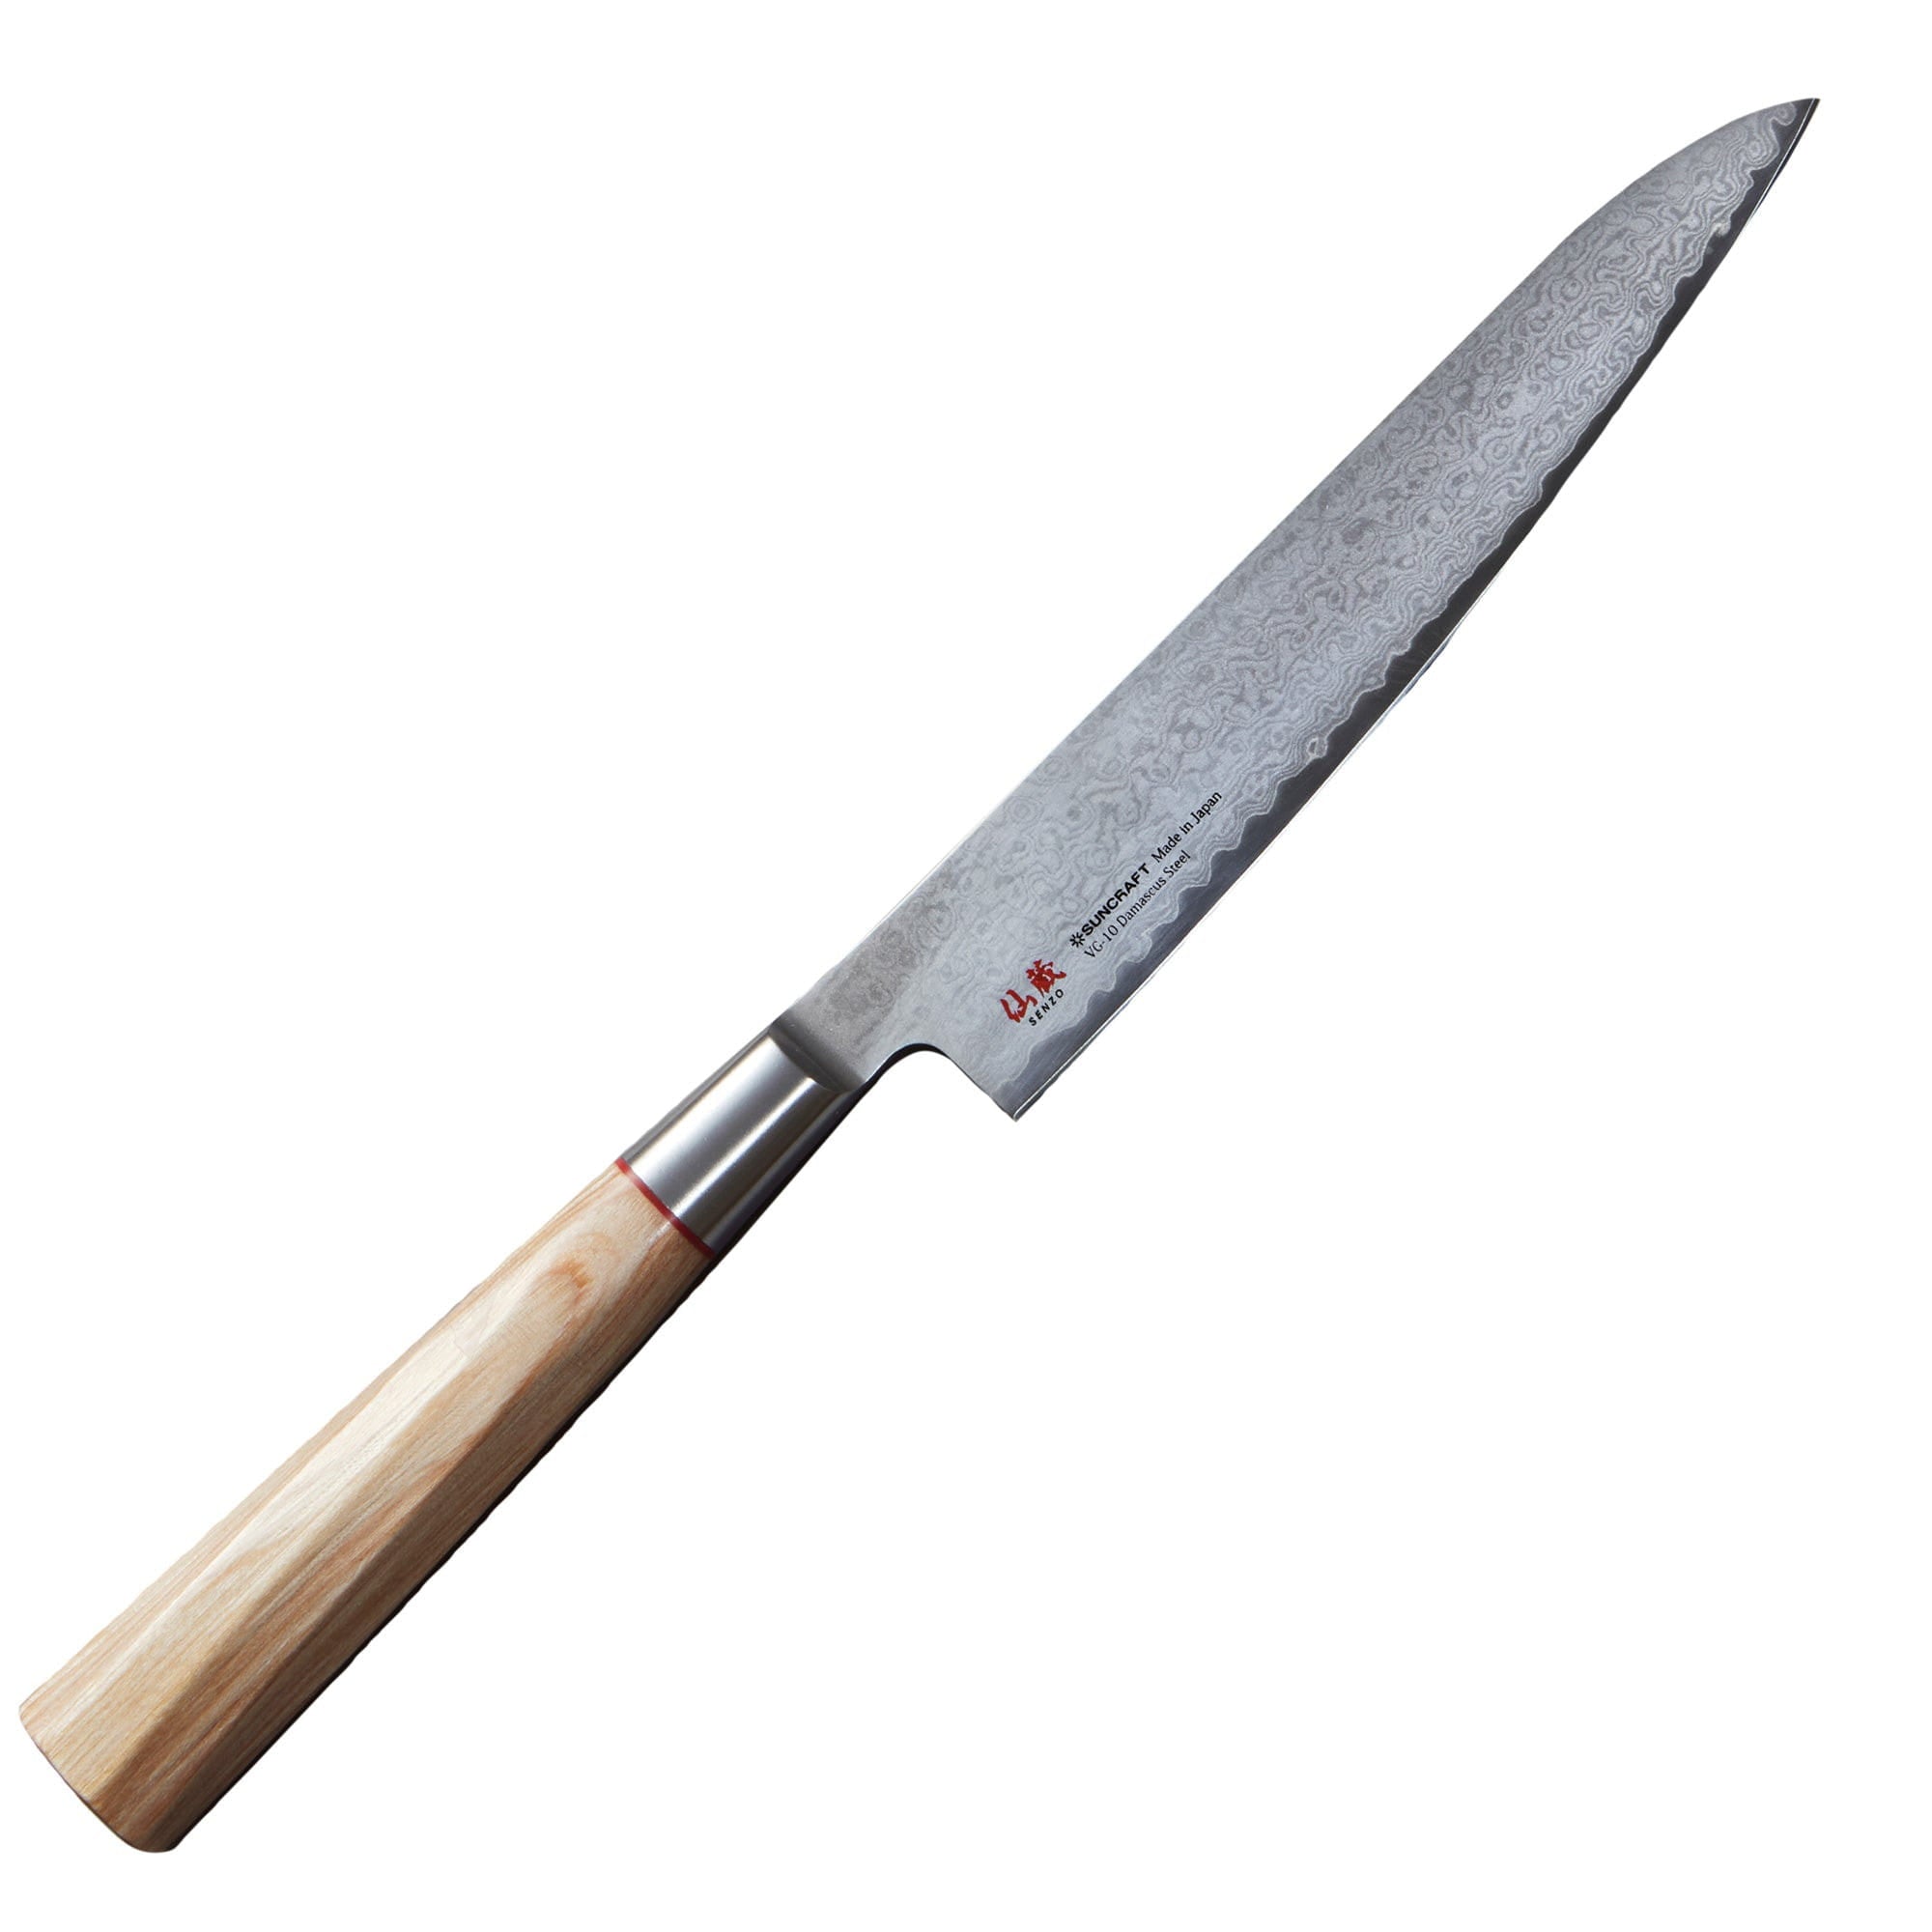 Senzo till 02 universell kniv, 15 cm